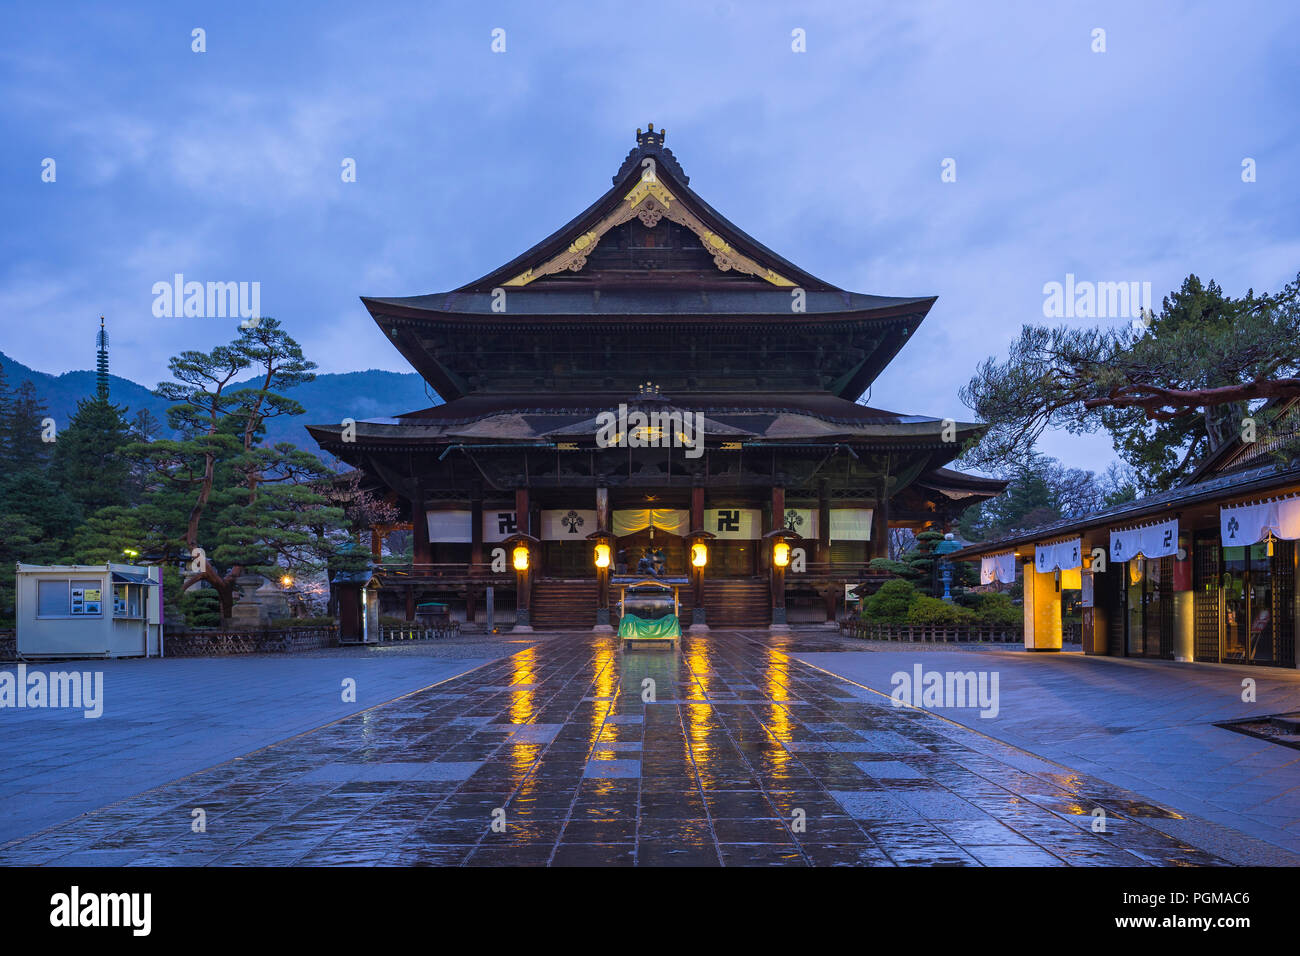 Zenkoji buddhist temple in Nagano, Japan. Stock Photo